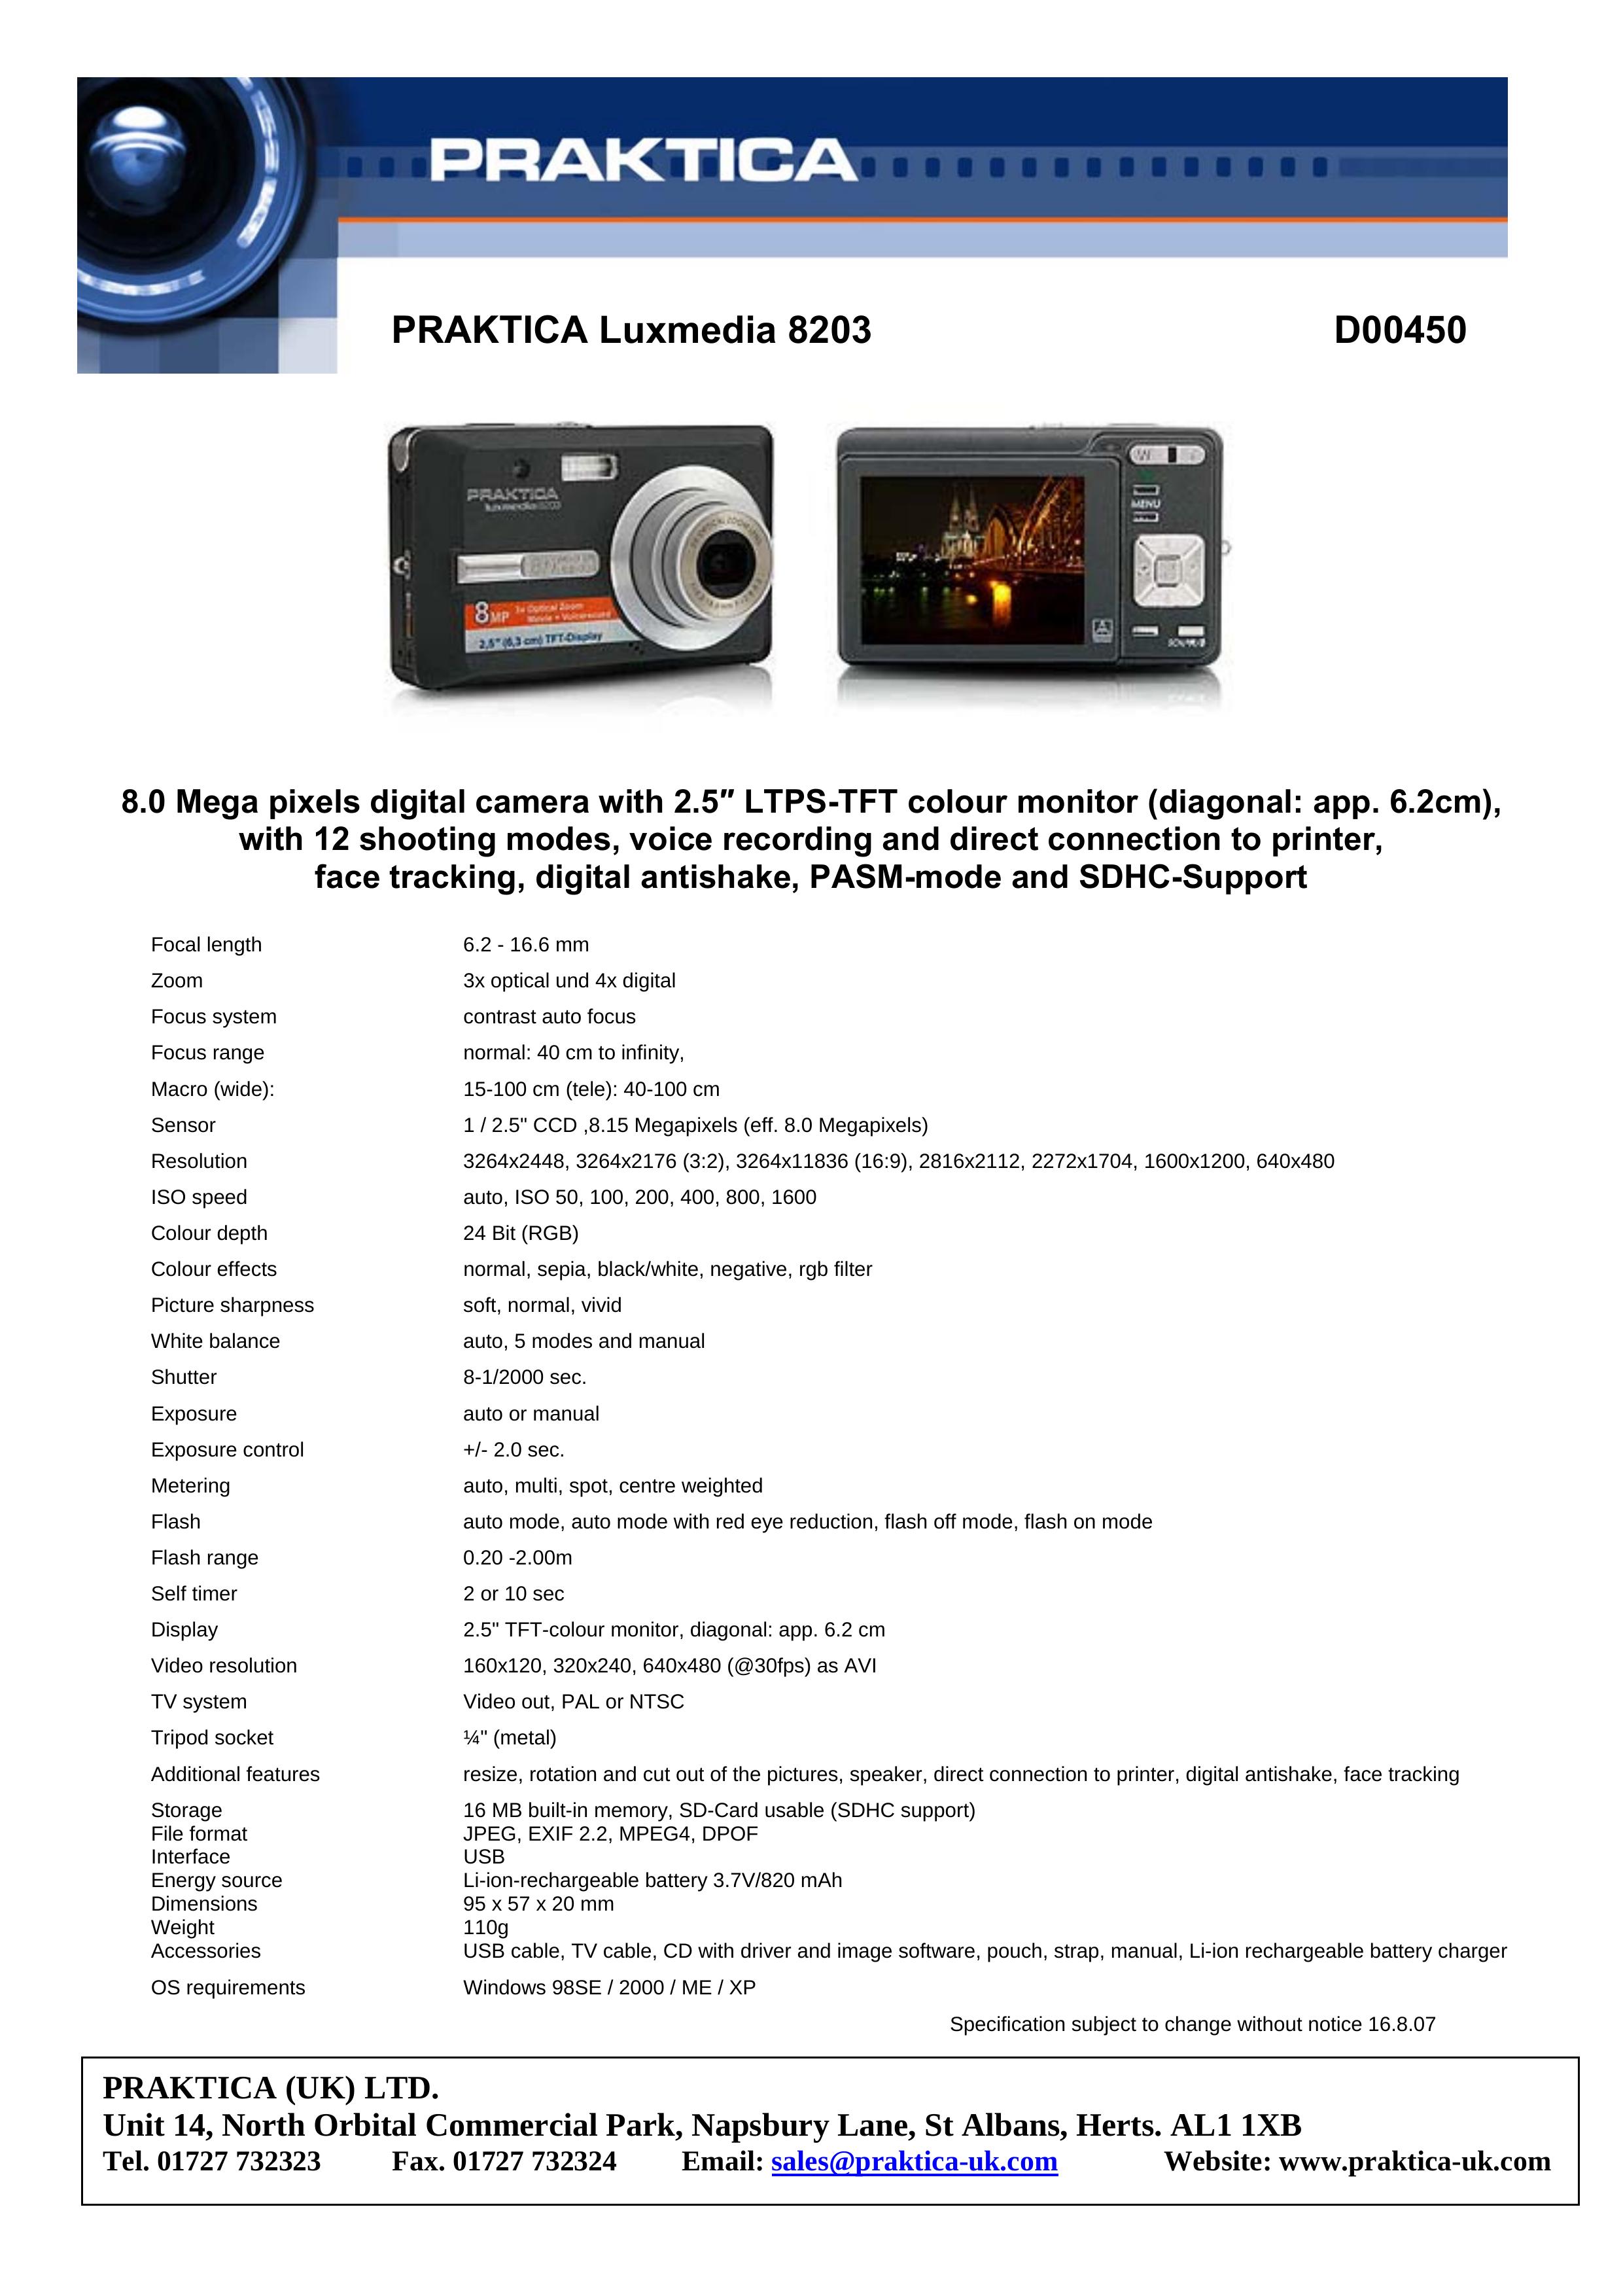 Praktica D00450 Digital Camera User Manual